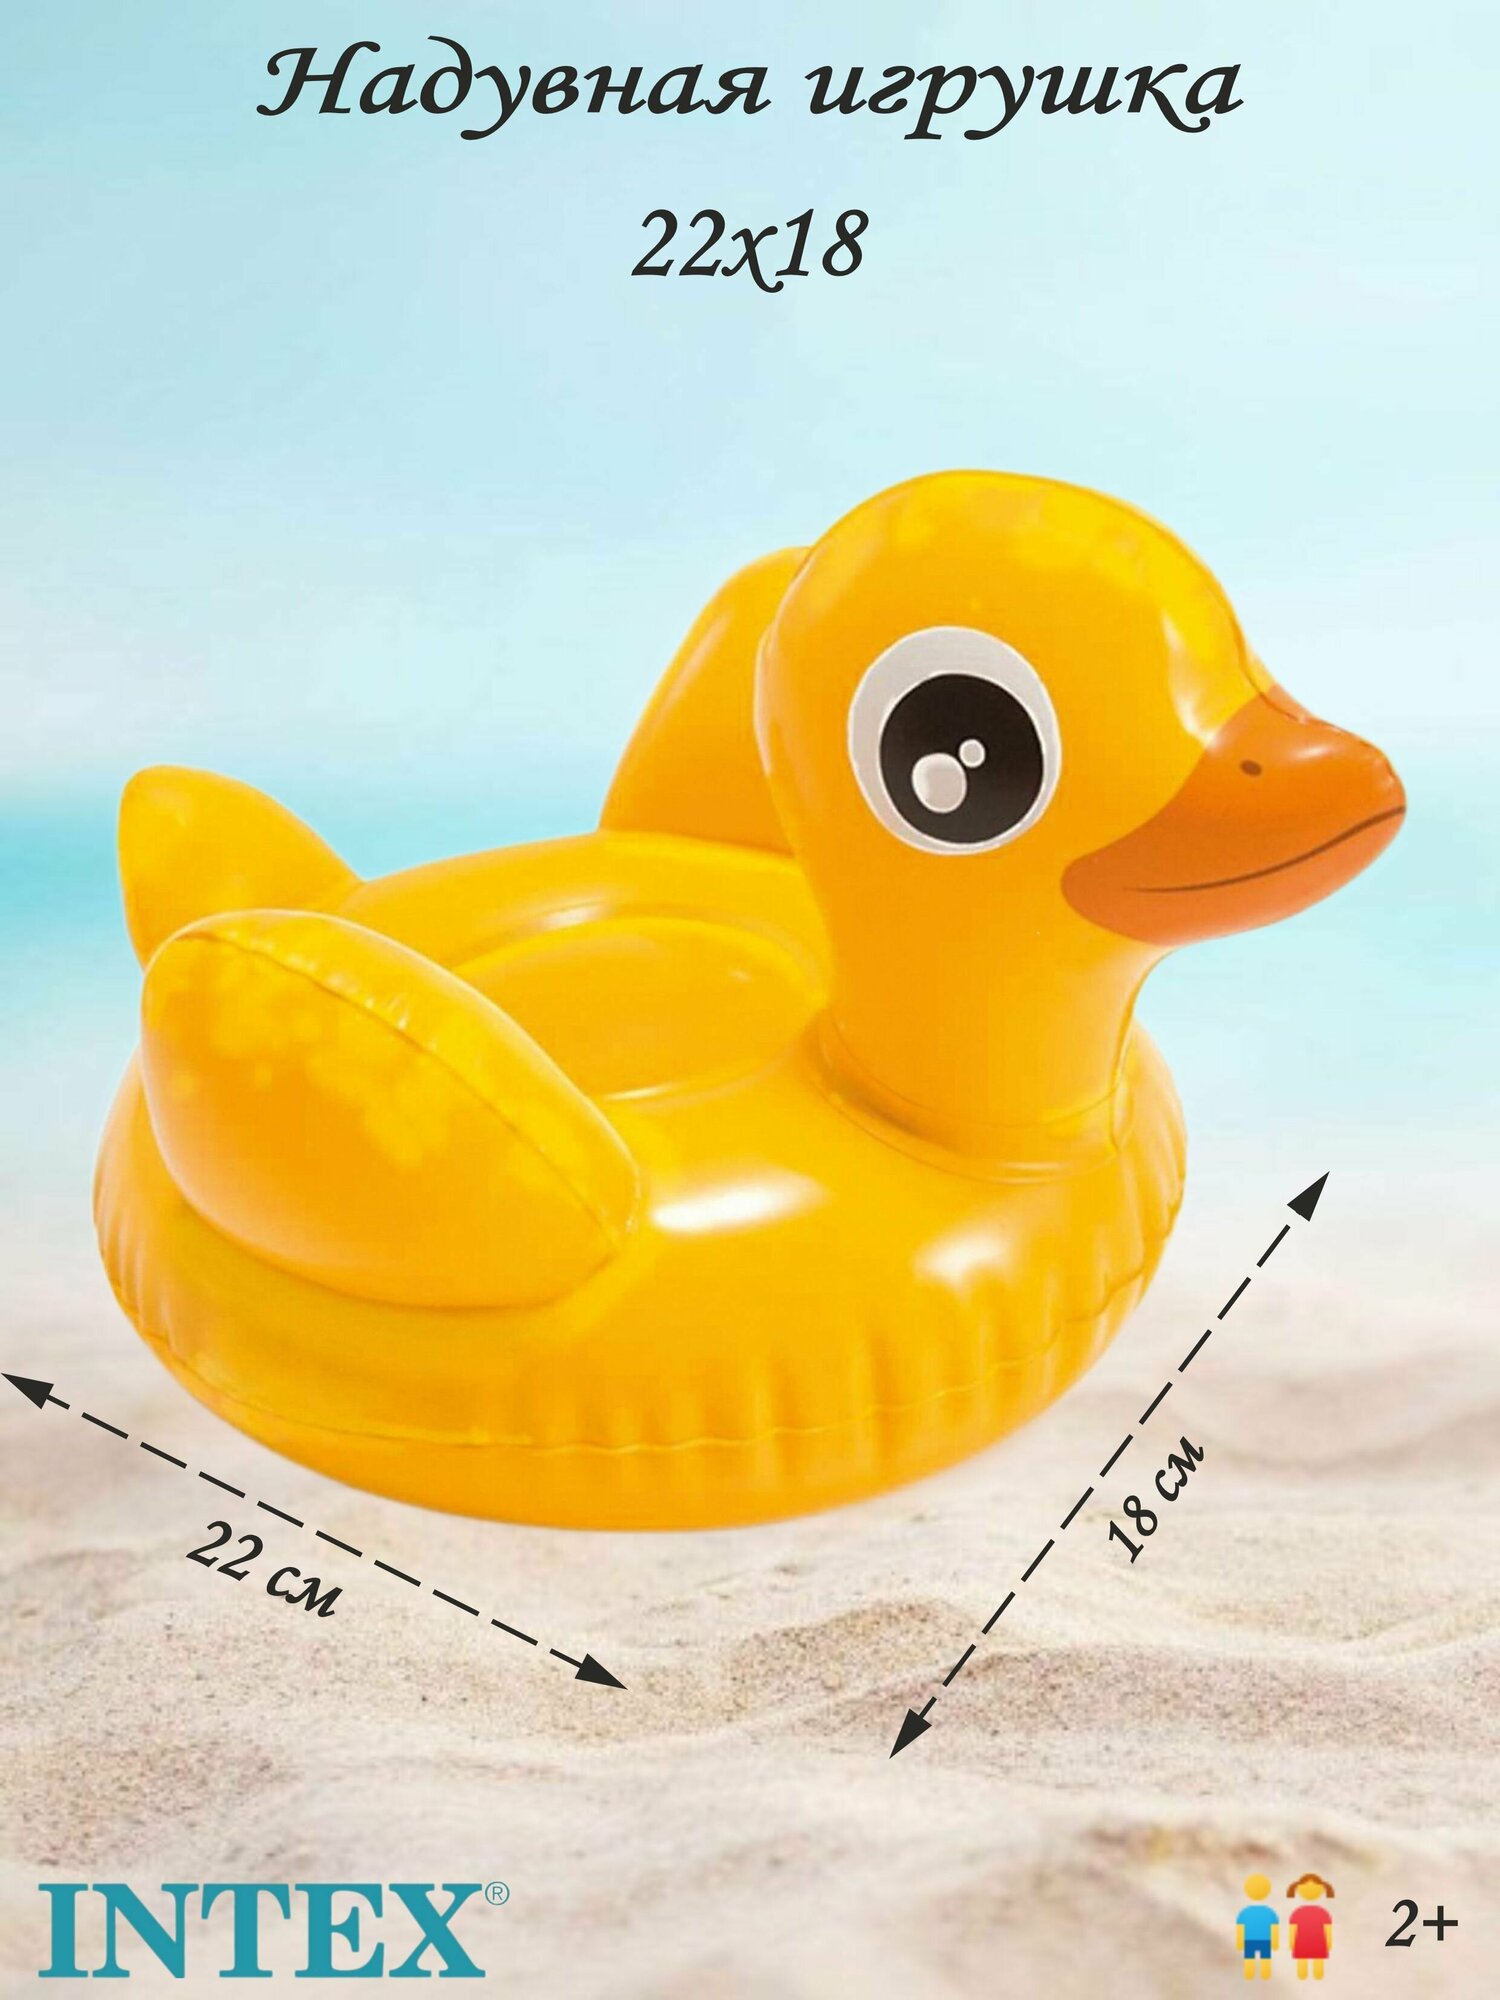 Надувная игрушка для купания